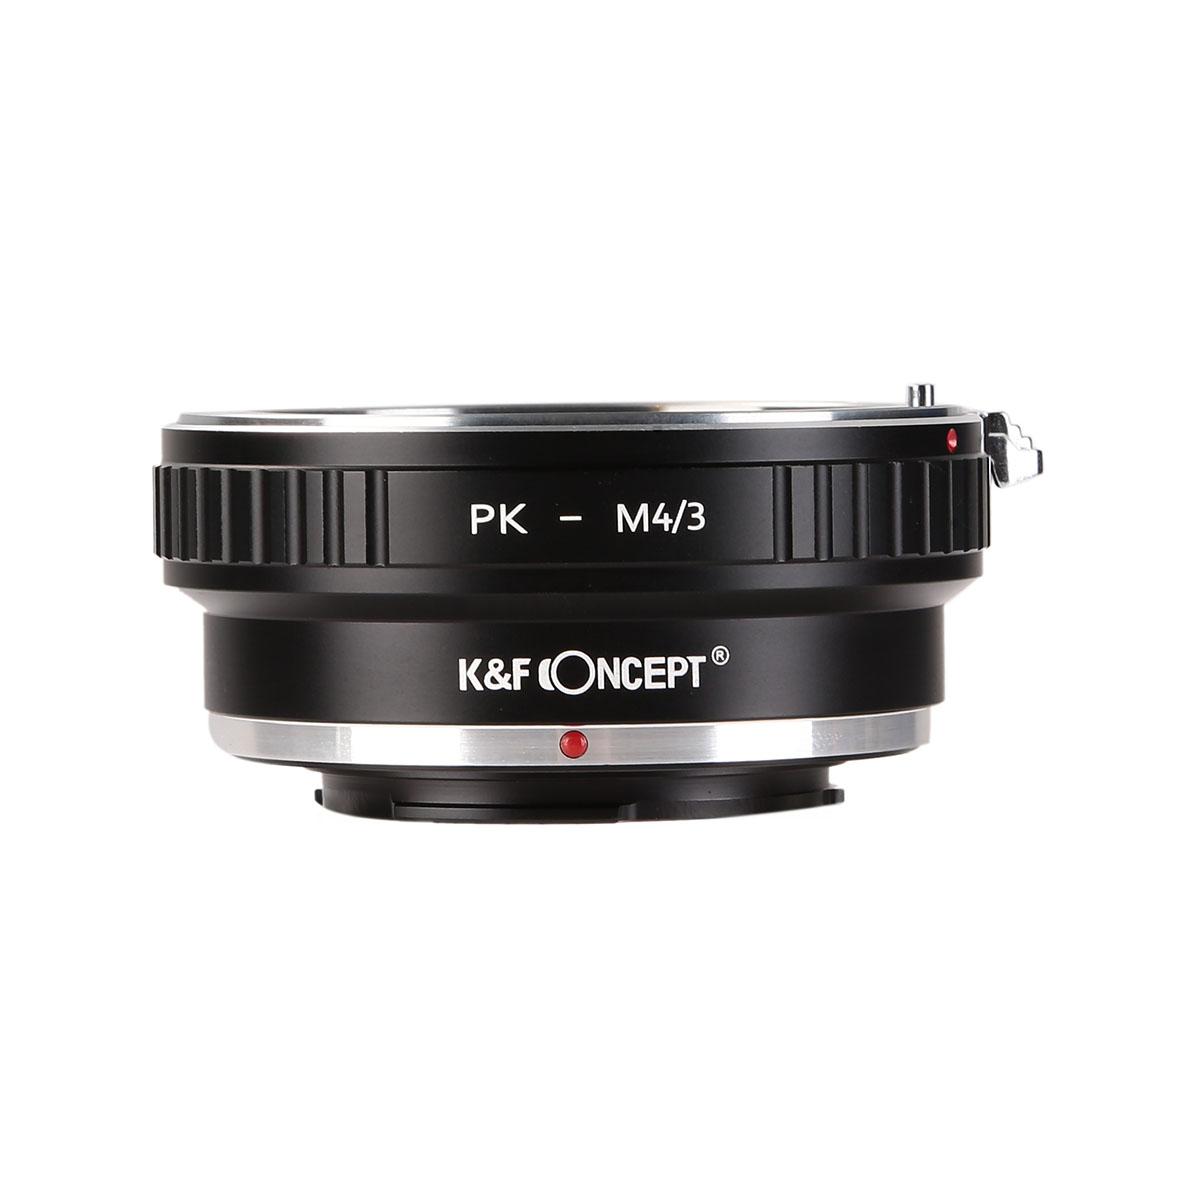 K&F Concept Lens Adapter KF06.089 for PK - M4/3